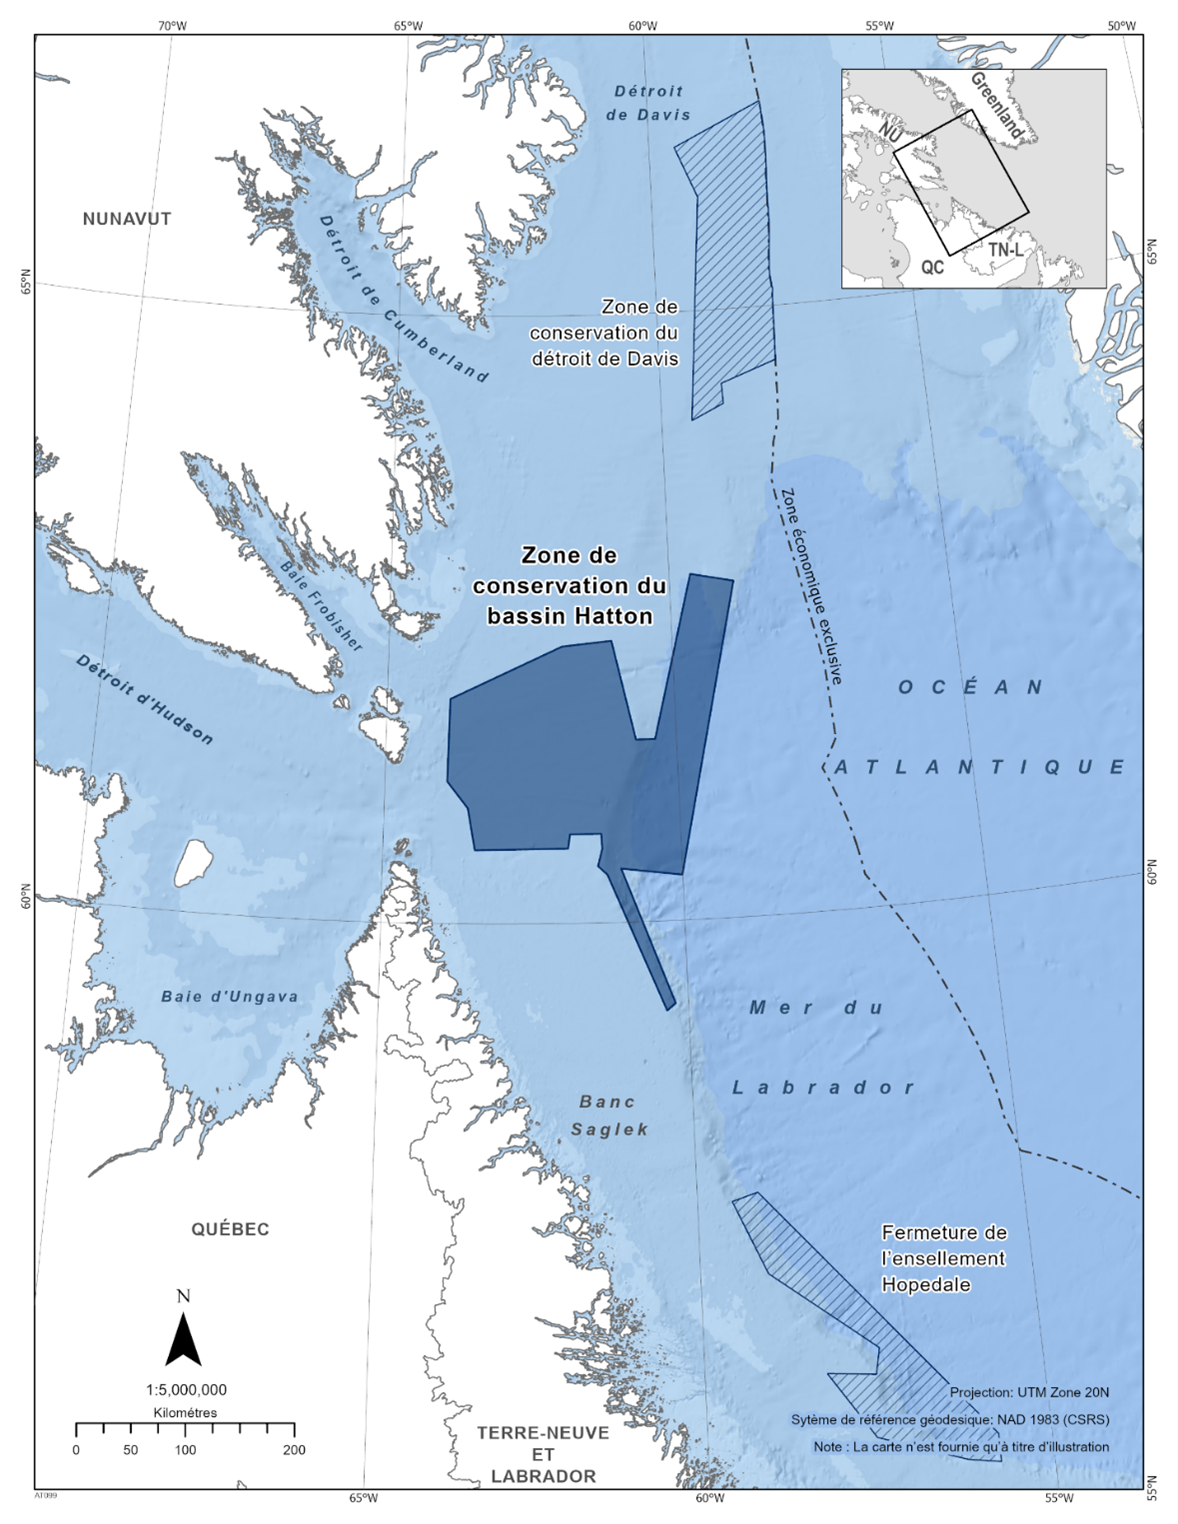 Carte de l'aire de conservation du bassin Hatton en bleu foncé. La carte présente également d'autres refuges marins à proximité avec des lignes diagonales bleu foncé (zone de conservation du détroit de Davis & fermeture de l’ensellement Hopedale). 